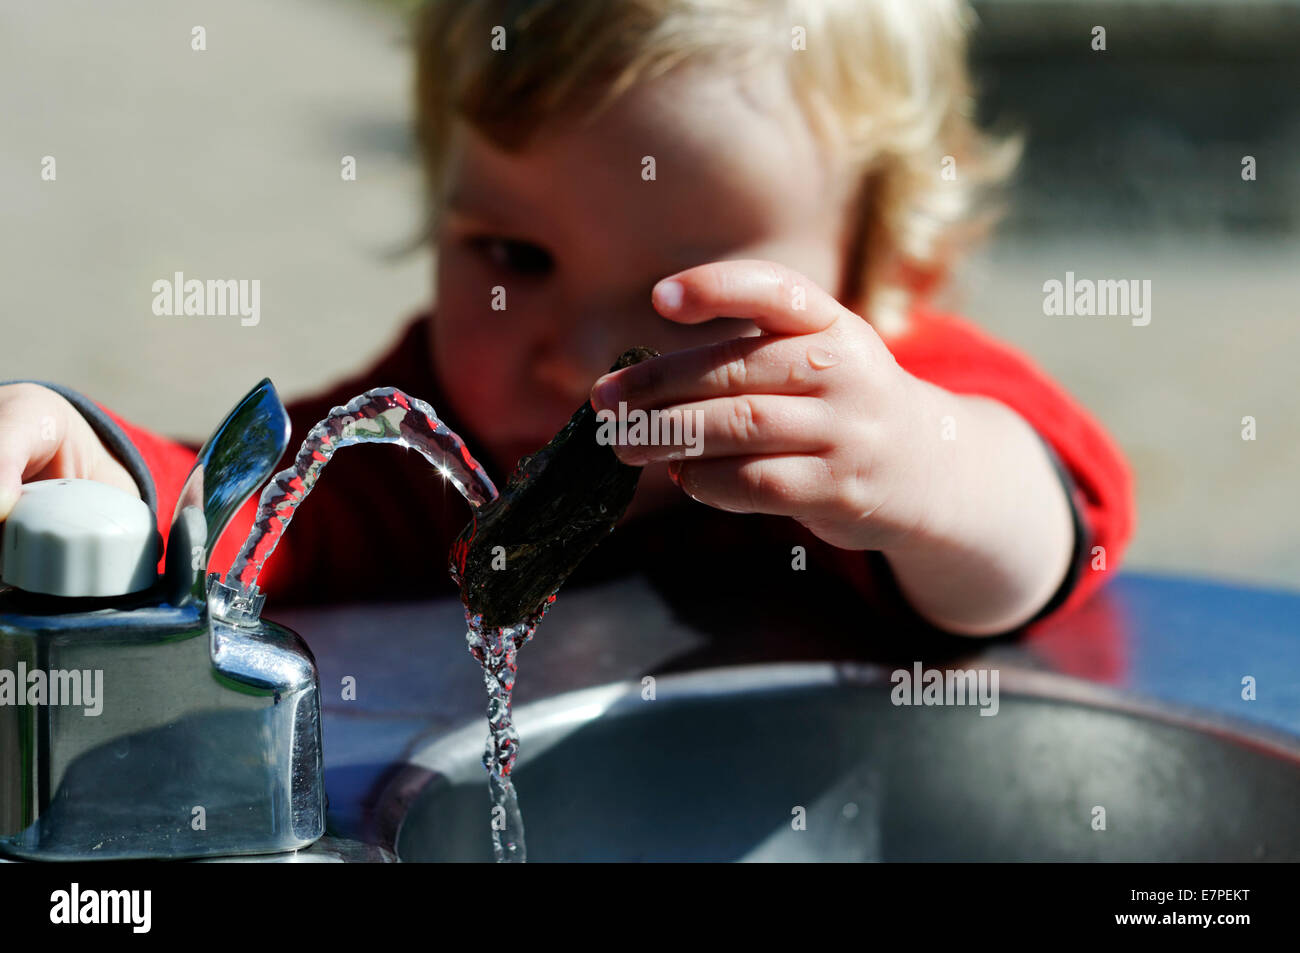 Ein kleiner Junge (2 1/2 Jahre alt) spielen mit einem Wasserbrunnen Stockfoto